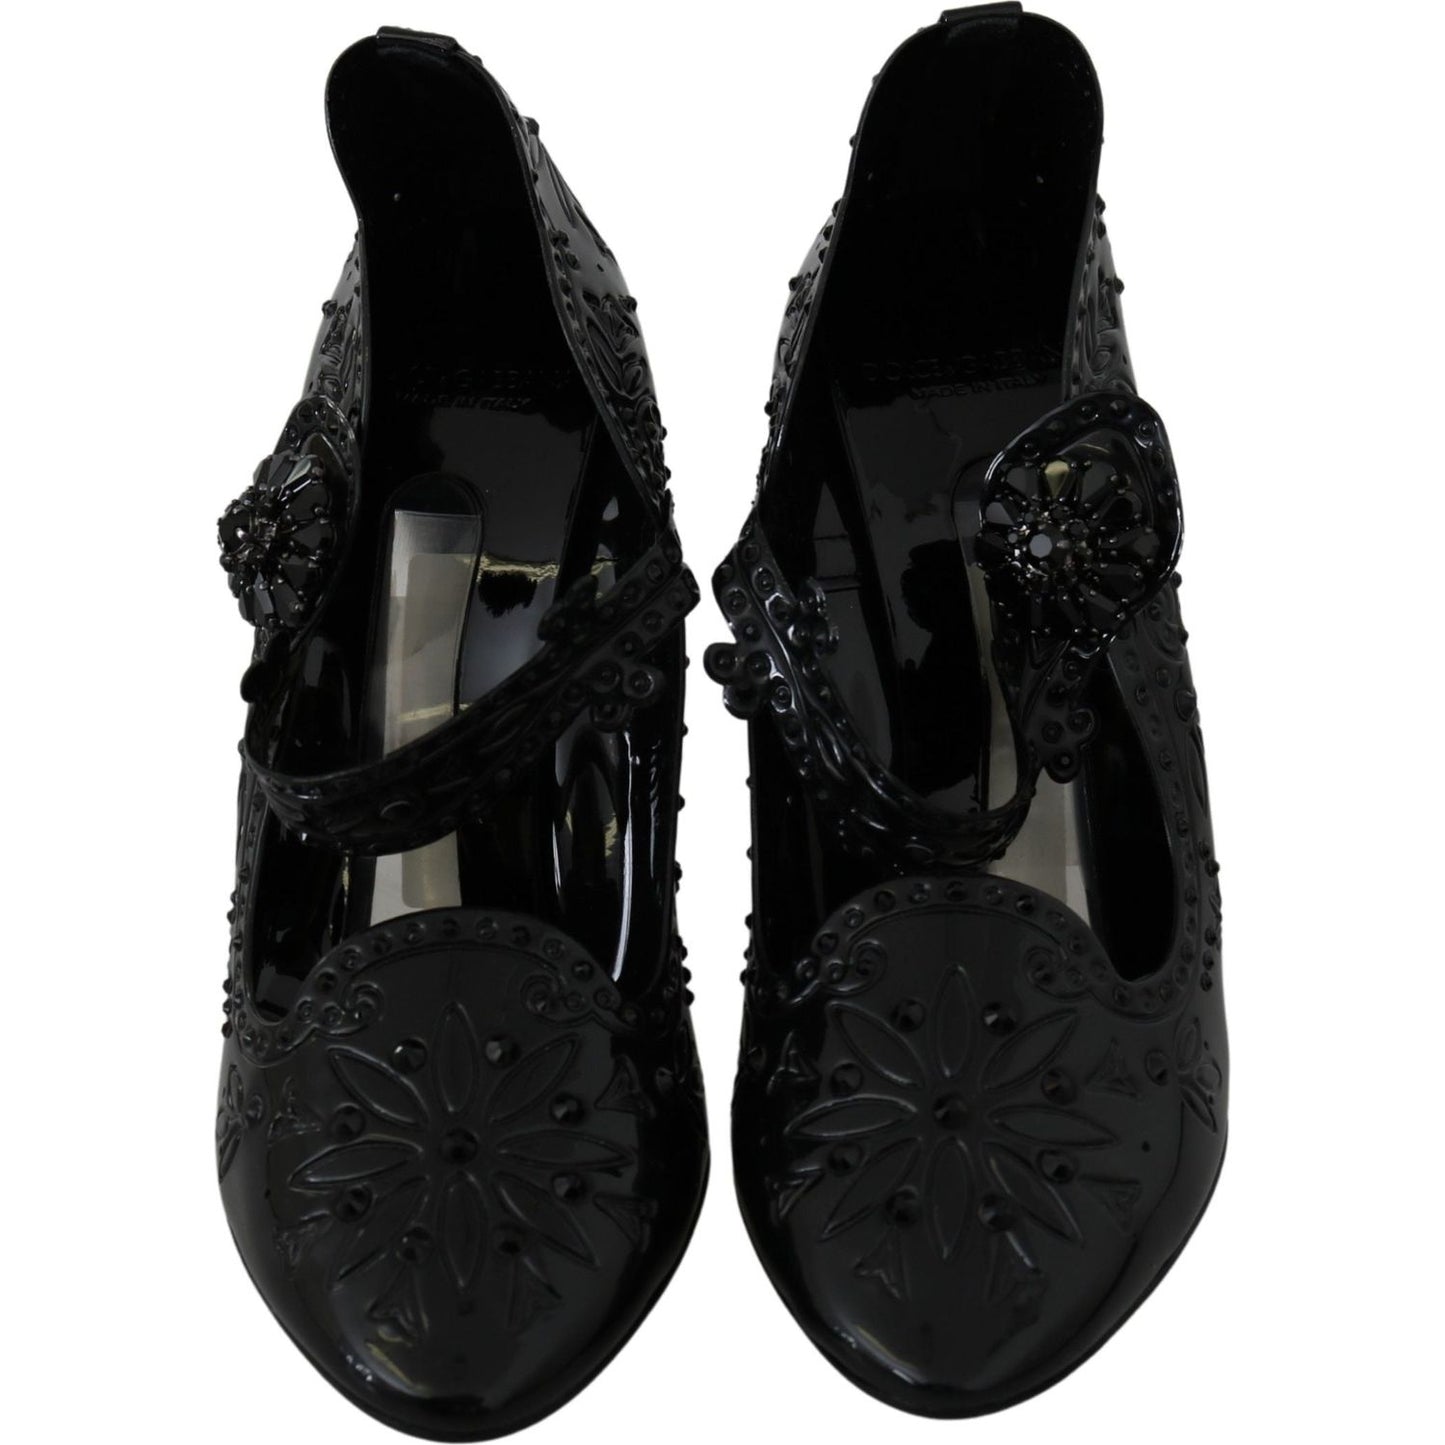 Dolce & Gabbana Elegant Crystal Embellished Cinderella Pumps black-floral-crystal-cinderella-heels-shoes